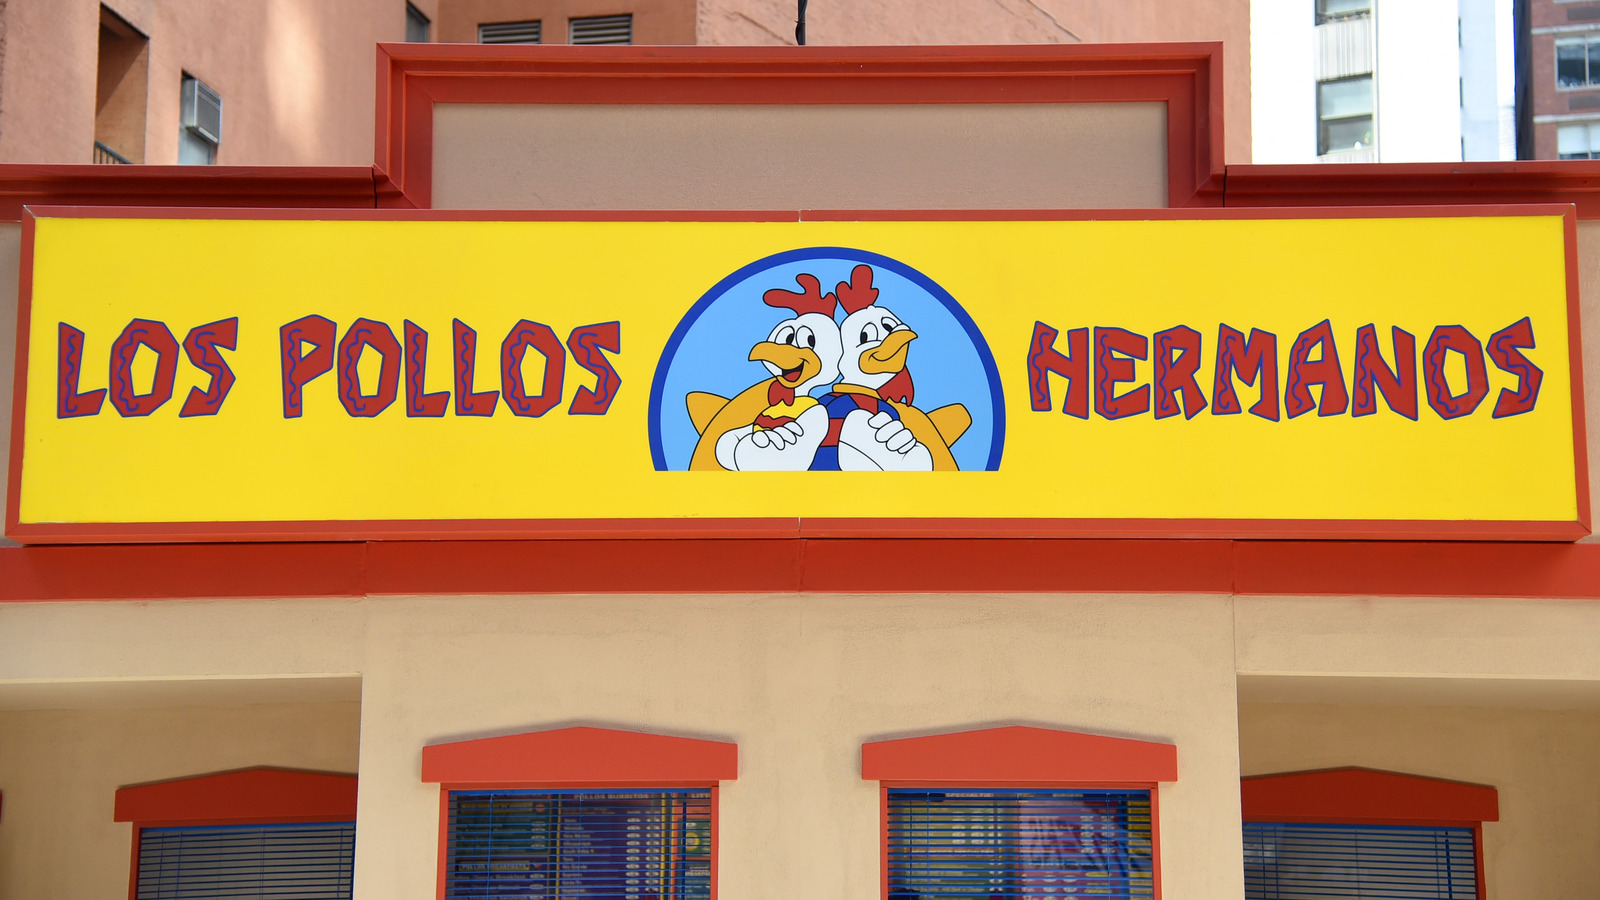 Is Breaking Bad's Los Pollos Hermanos A Real Restaurant?